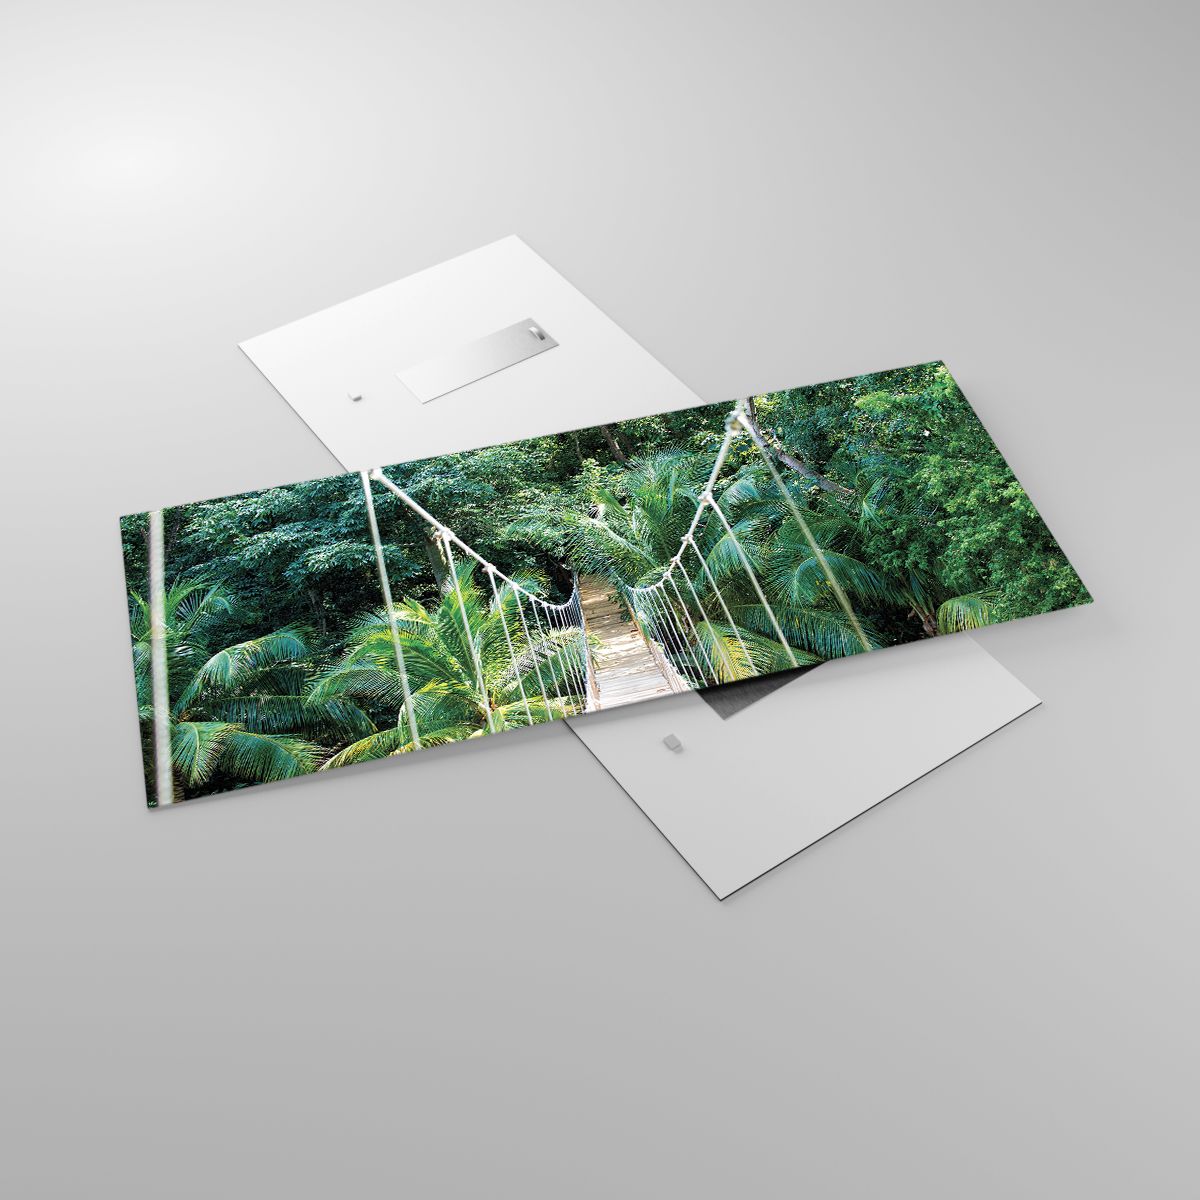 Bild på glas Landskap, Bild på glas Djungel, Bild på glas Honduras, Bild på glas Hängande Bro, Bild på glas Natur